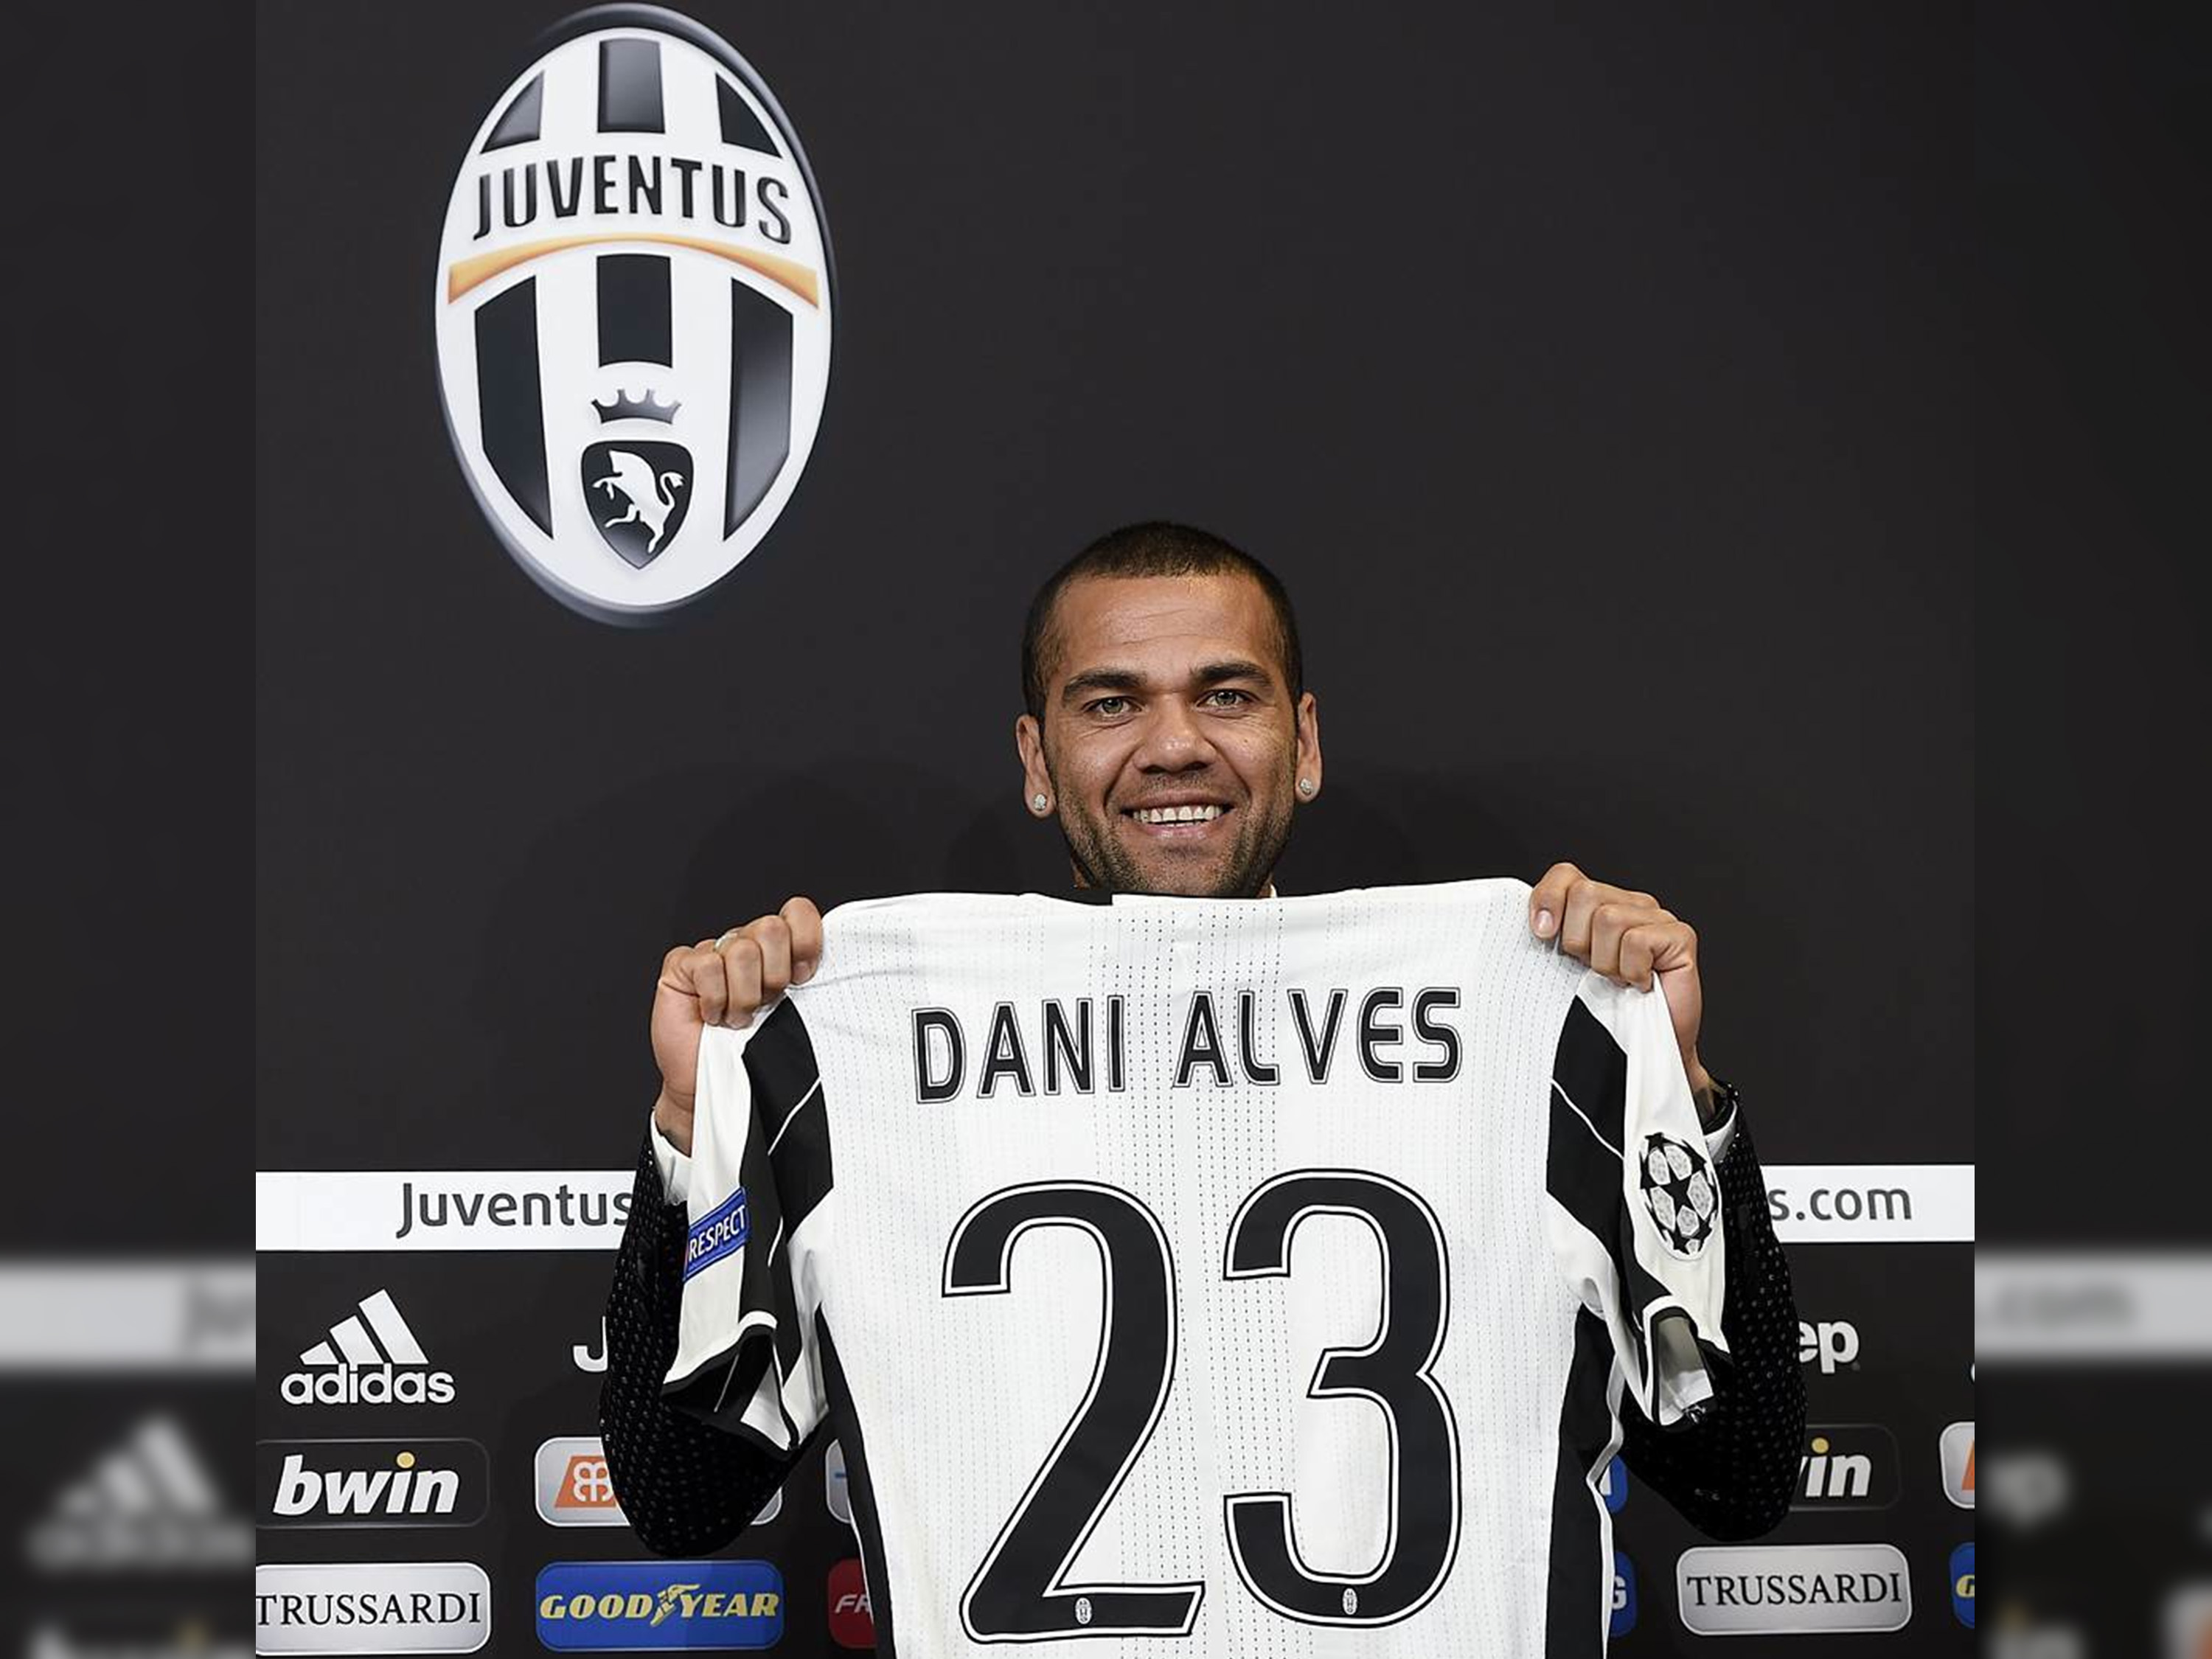 Daniel Alves chega à Juventus e se inspira em LeBron | VEJA